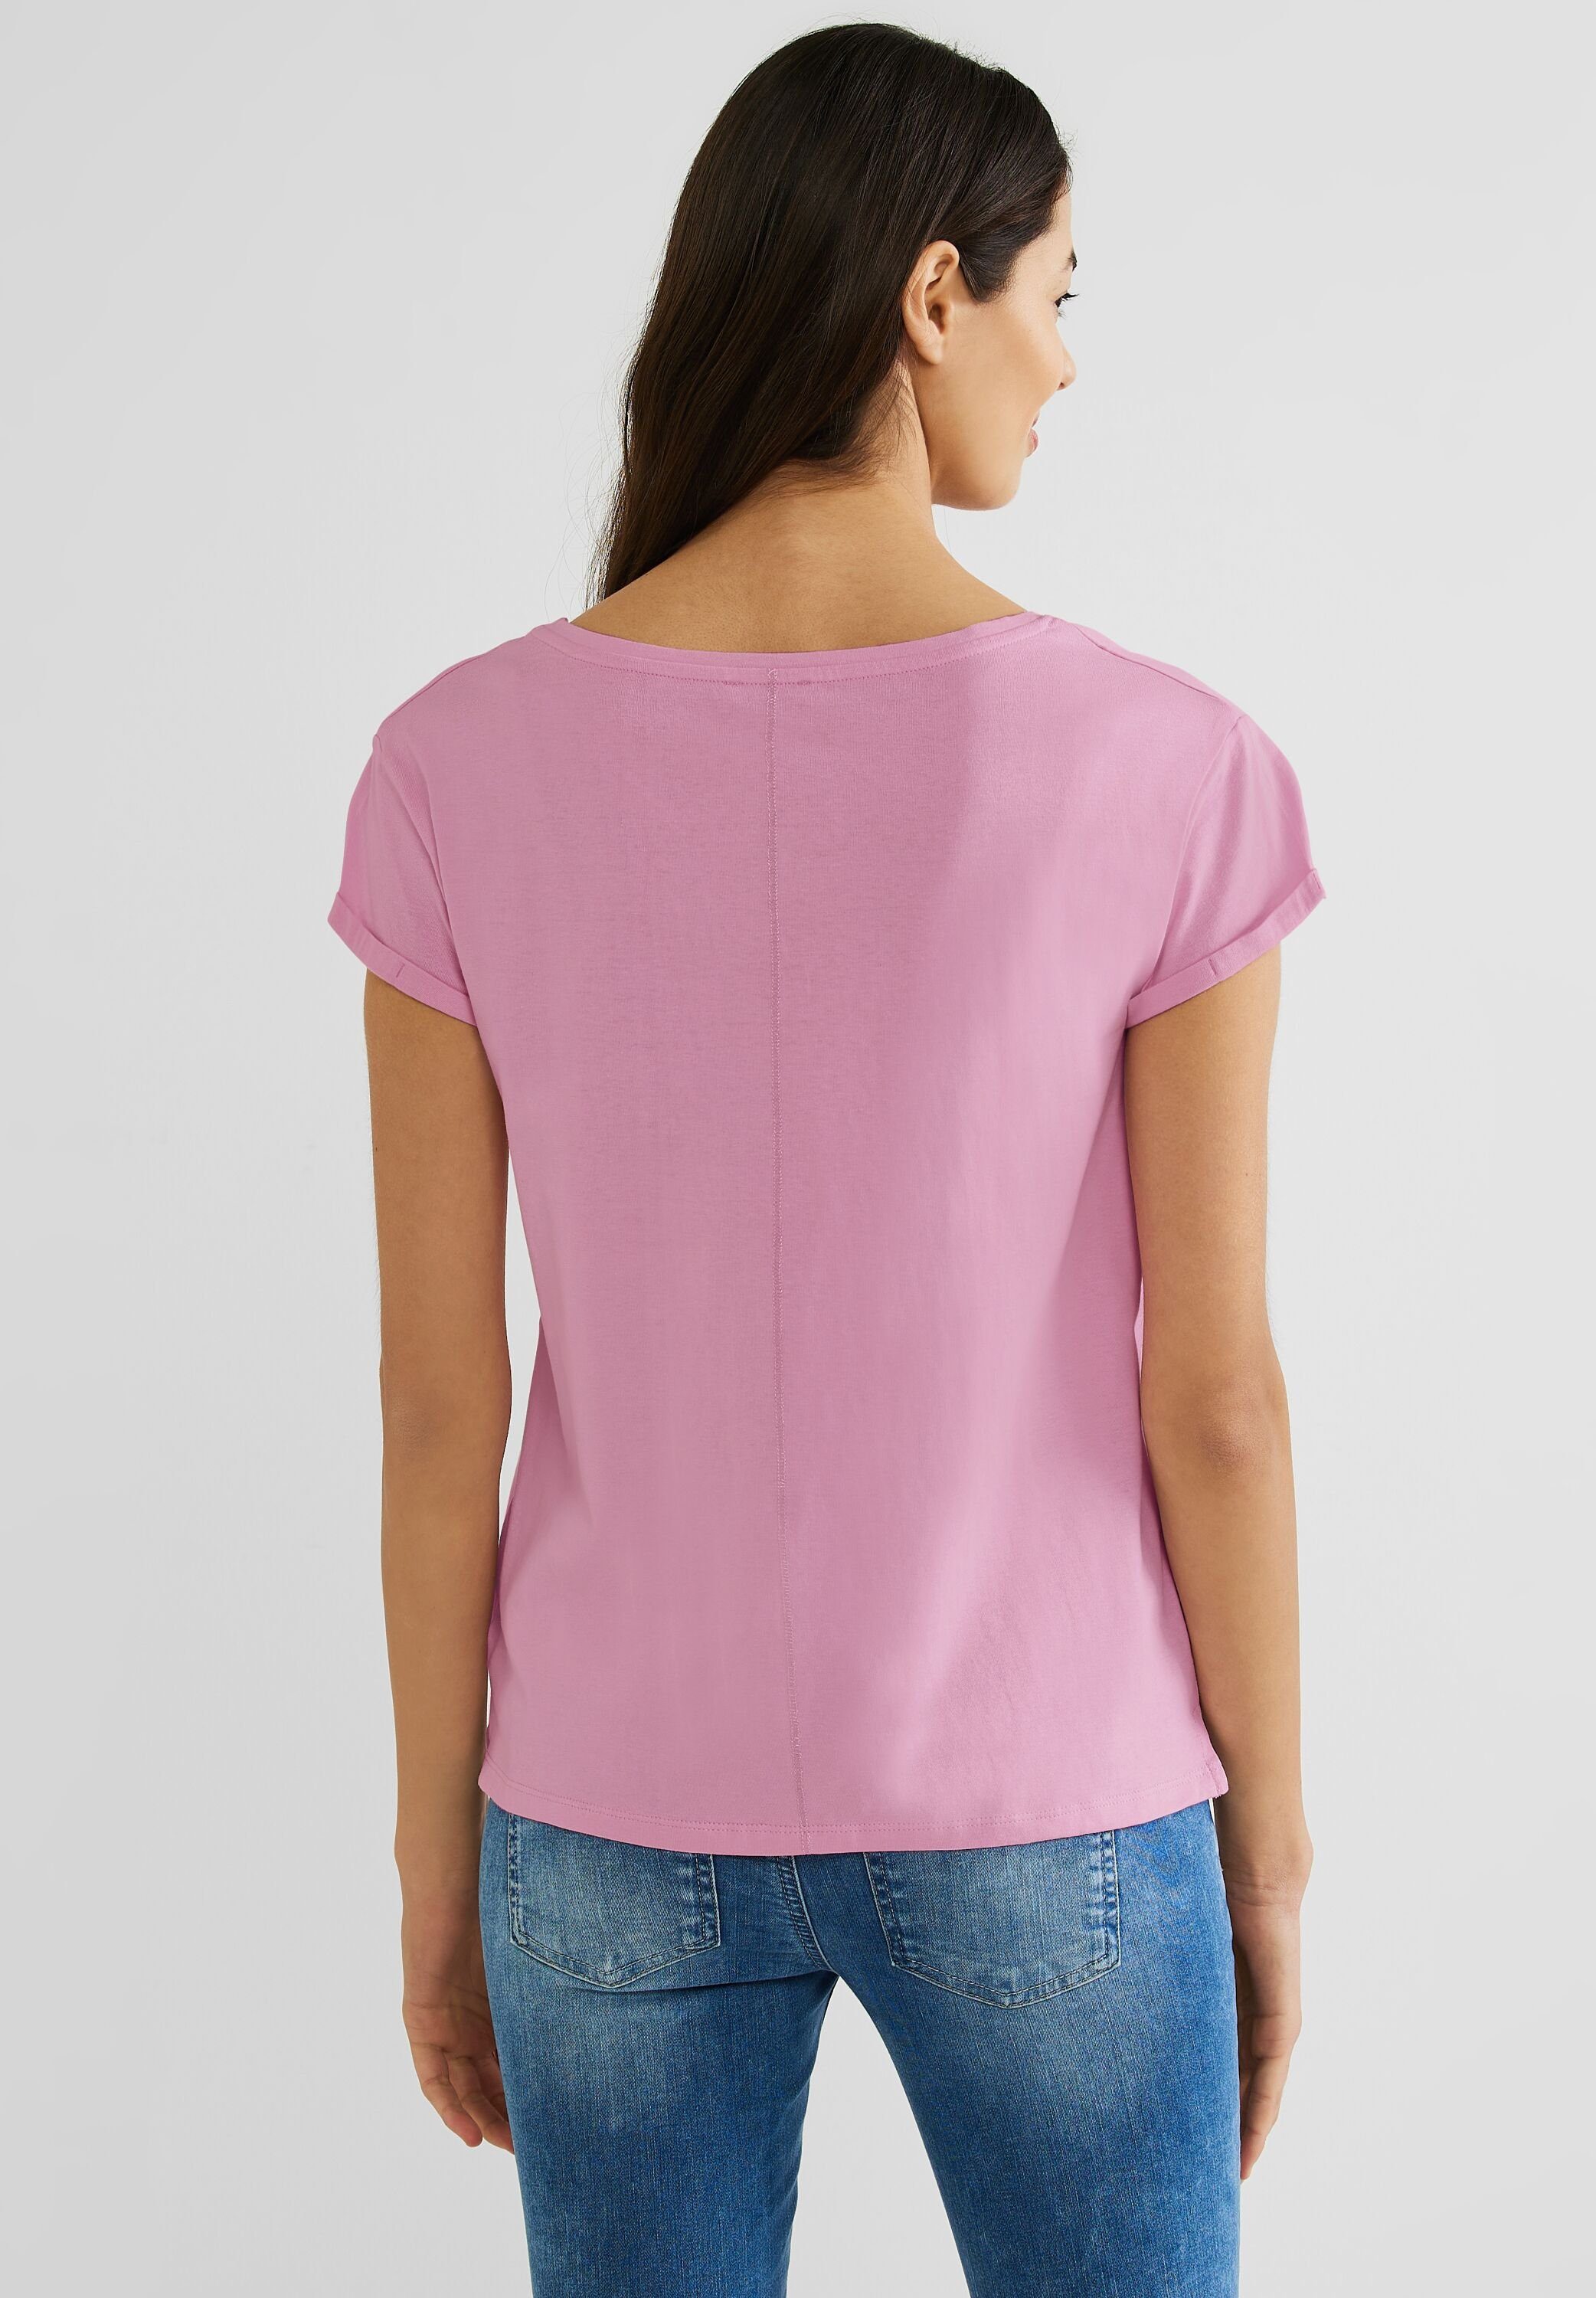 ONE reiner Baumwolle T-Shirt STREET wild aus rose